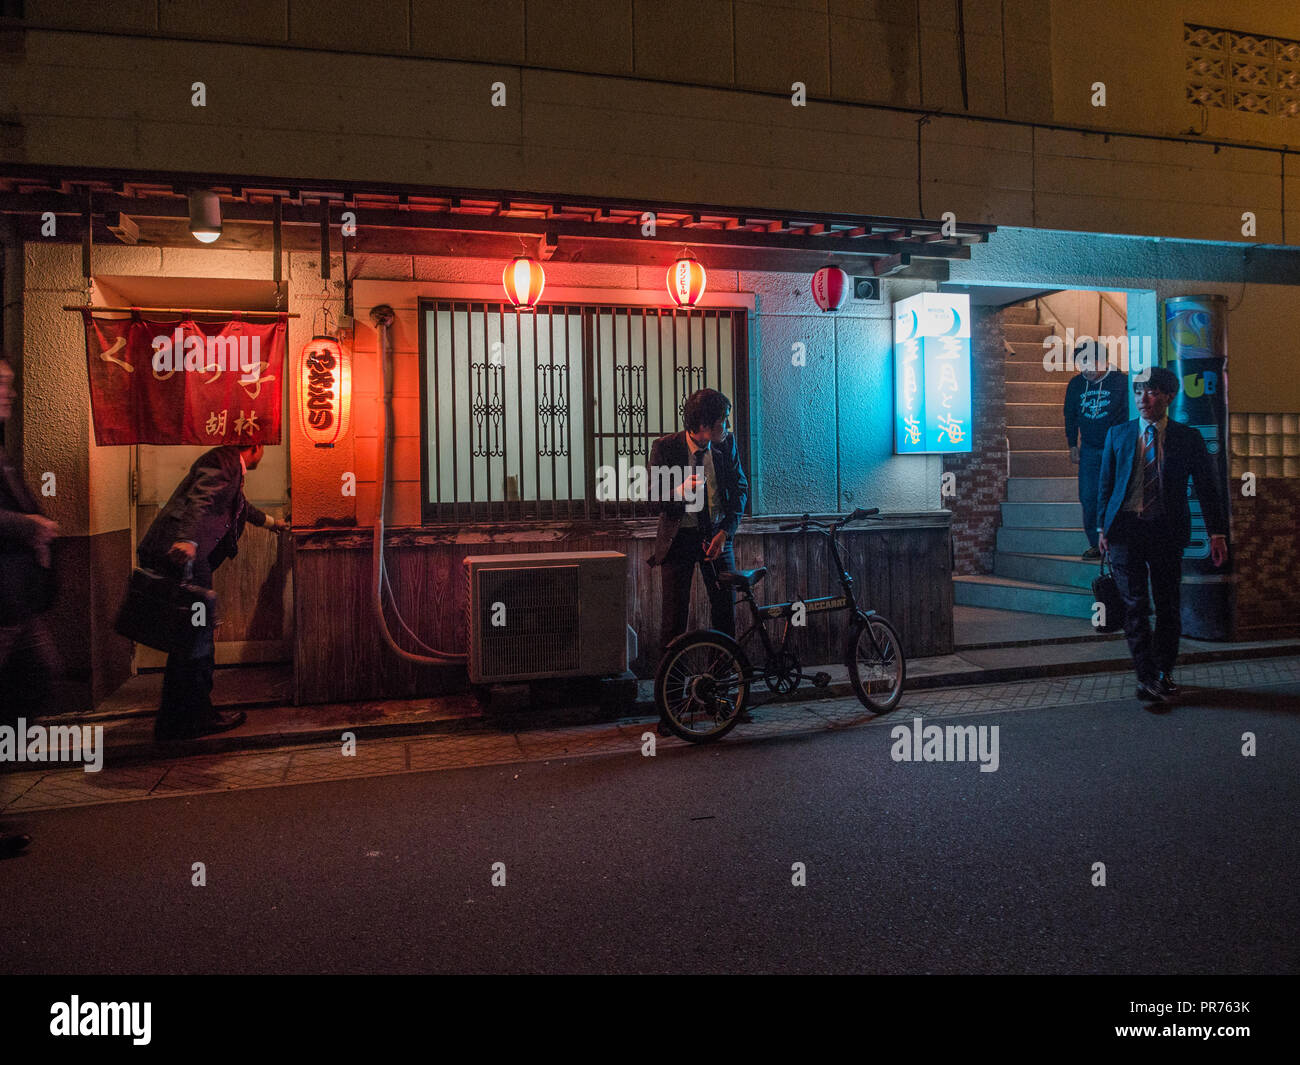 Stipendio di uomini in strada al di fuori servizio hostess club, il quartiere del divertimento di notte, Bungotakeda, Oita, Kyushu, Giappone Foto Stock